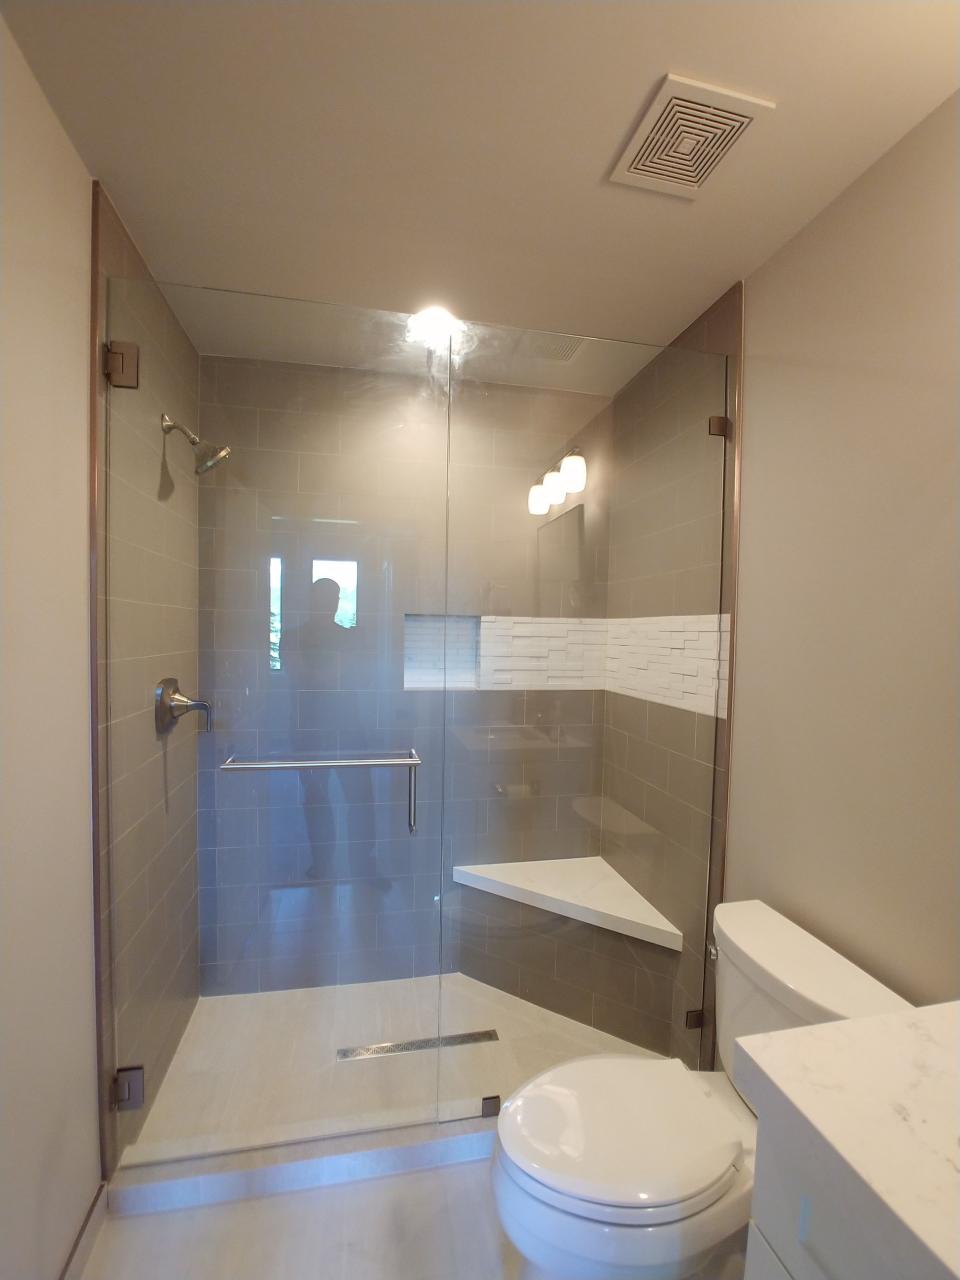 Renovated Guest Bathroom in Park City, Utah Guest bathroom